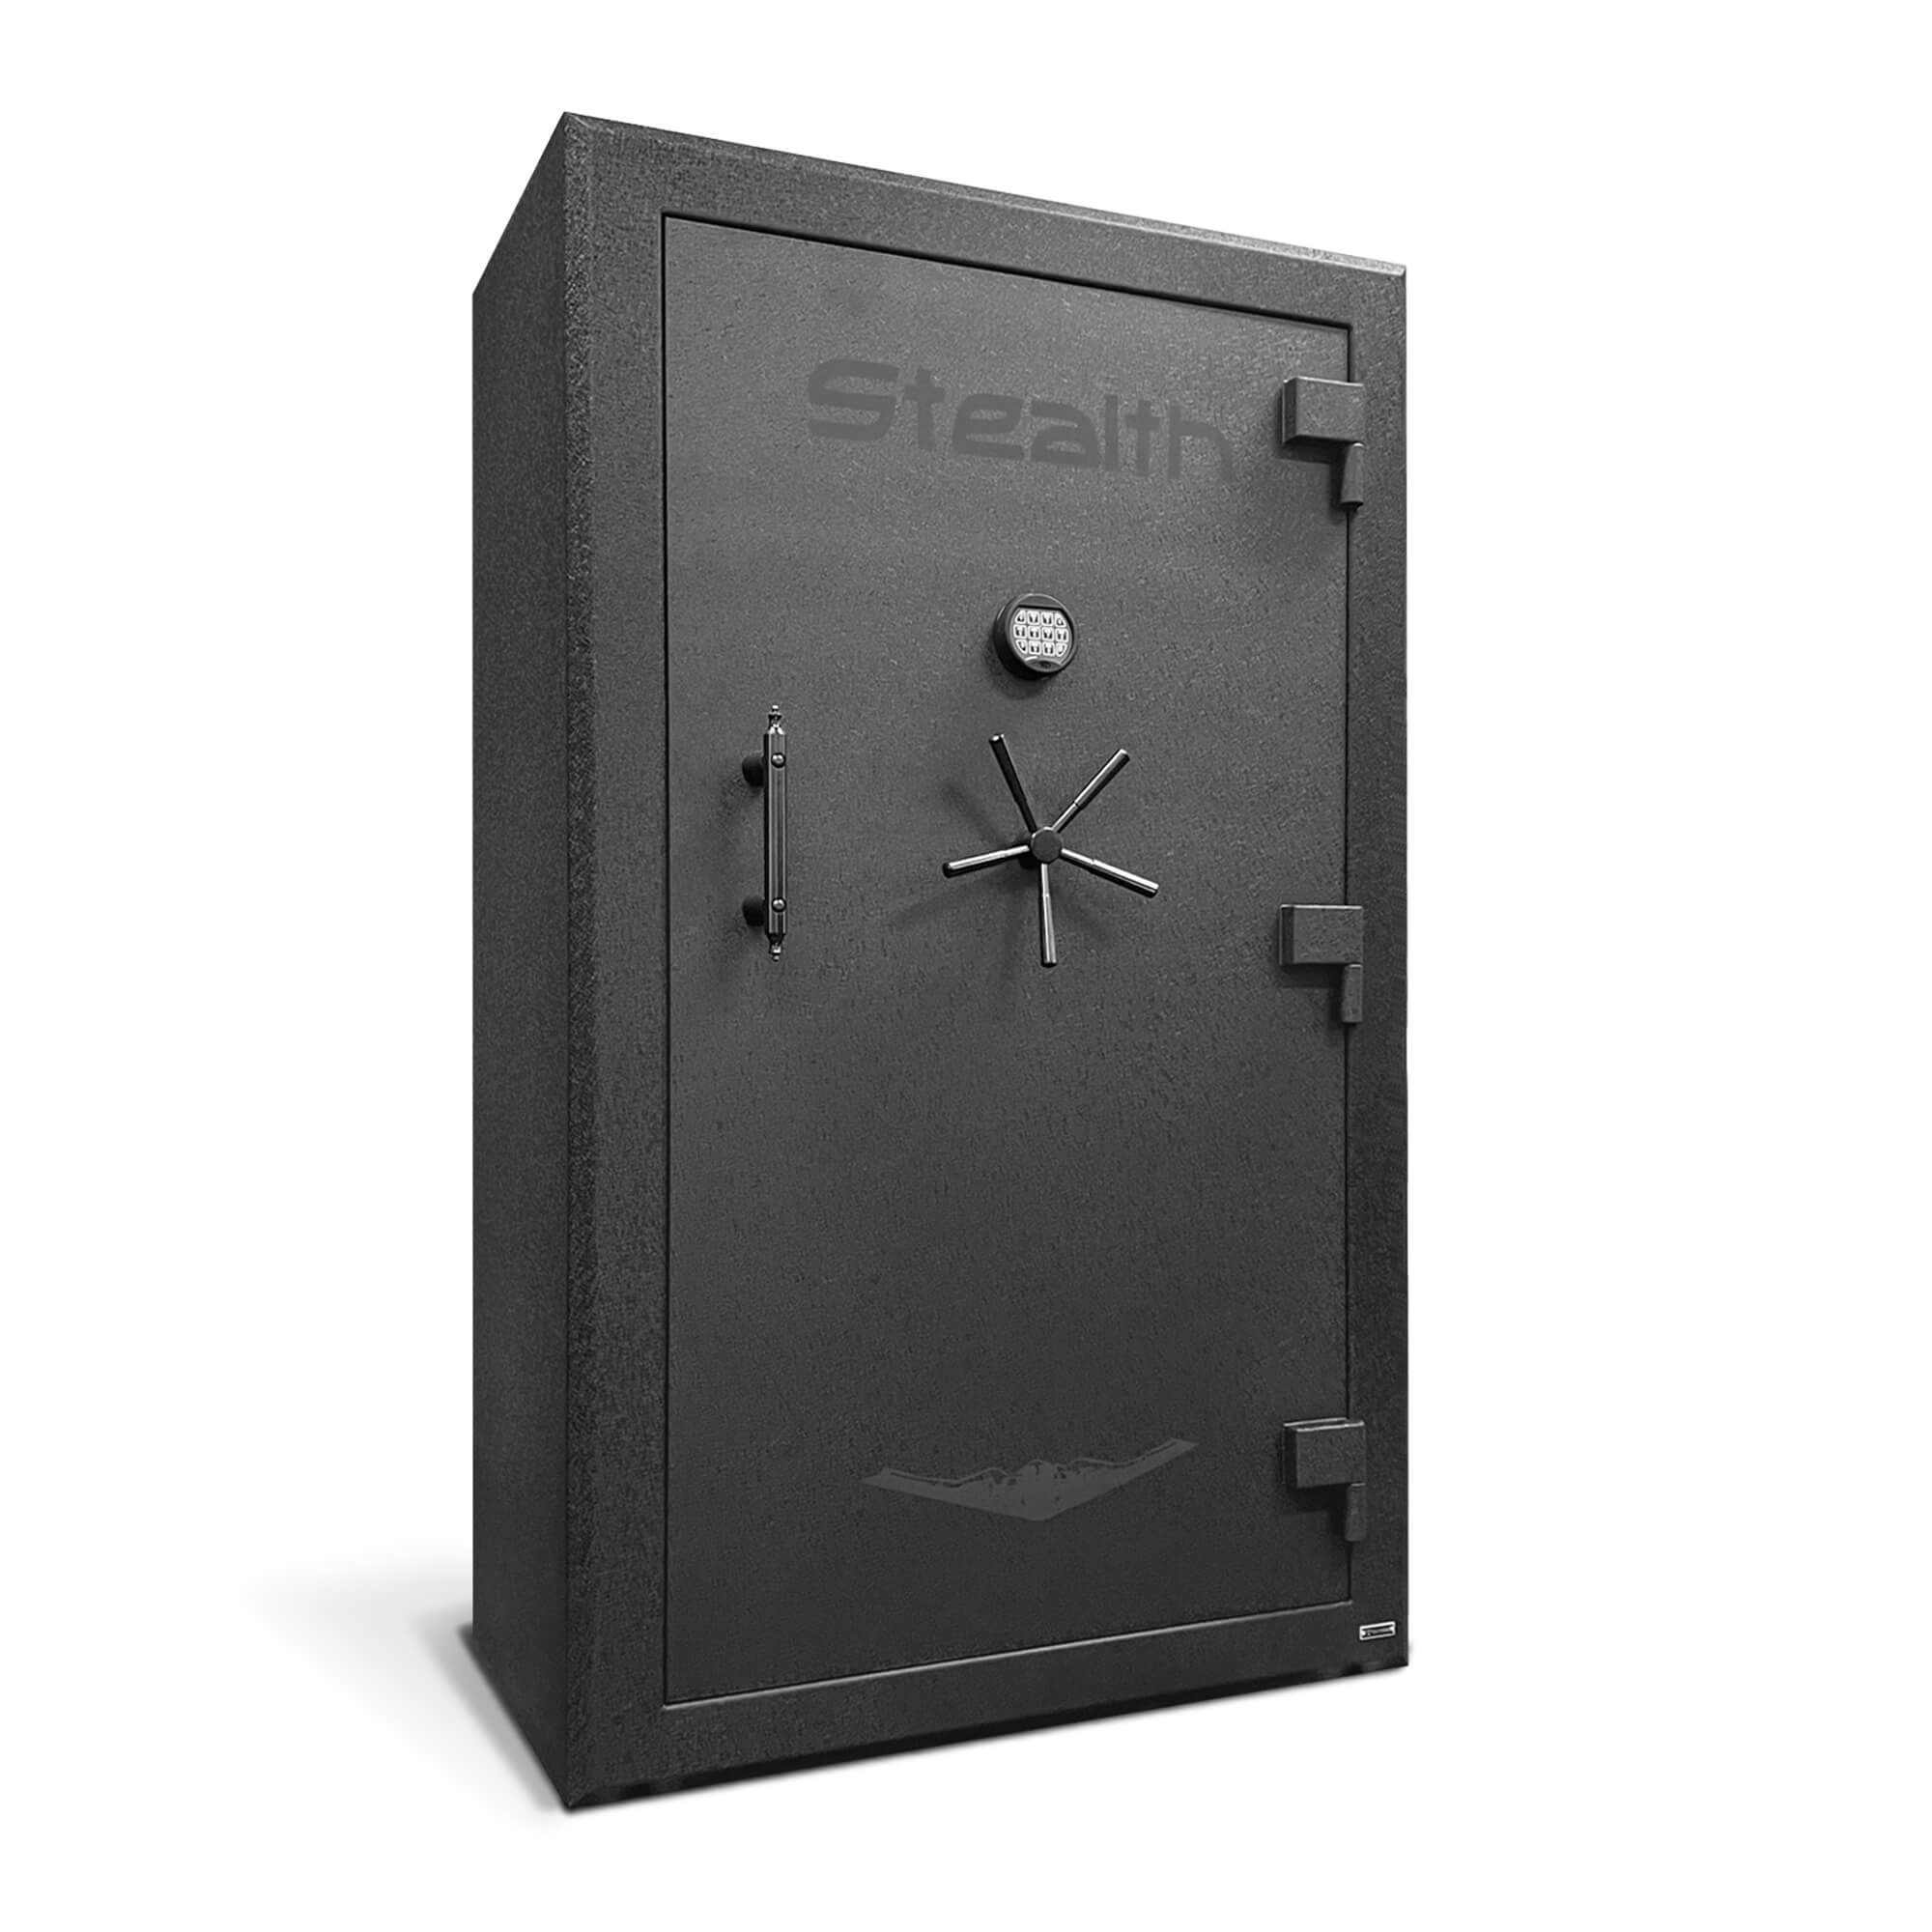 Stealth | PR50 | Premier 50 Gun Safe